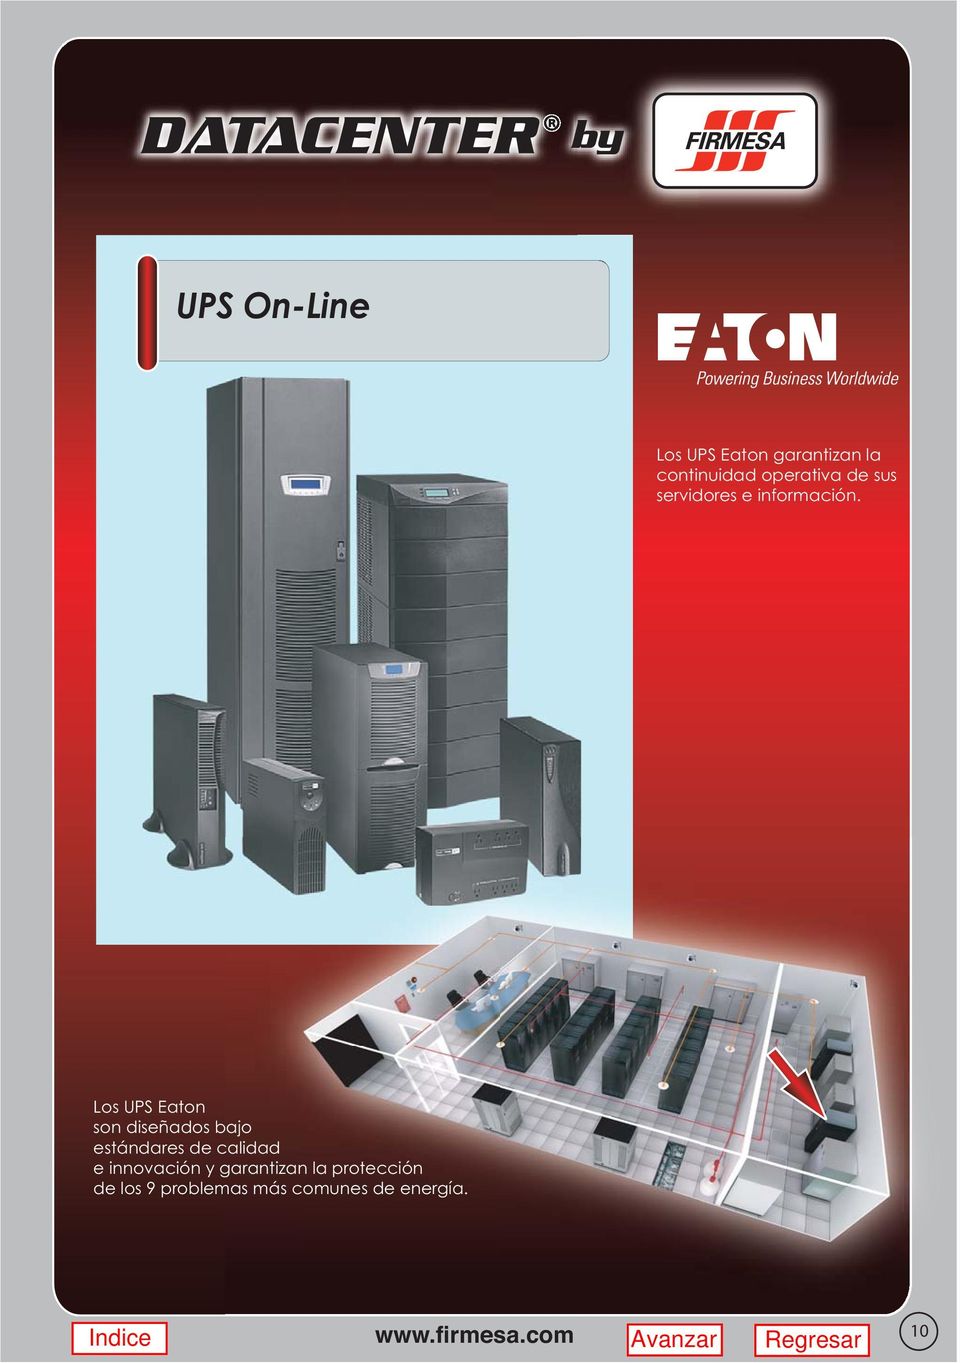 Los UPS Eaton son diseñados bajo estándares de calidad e